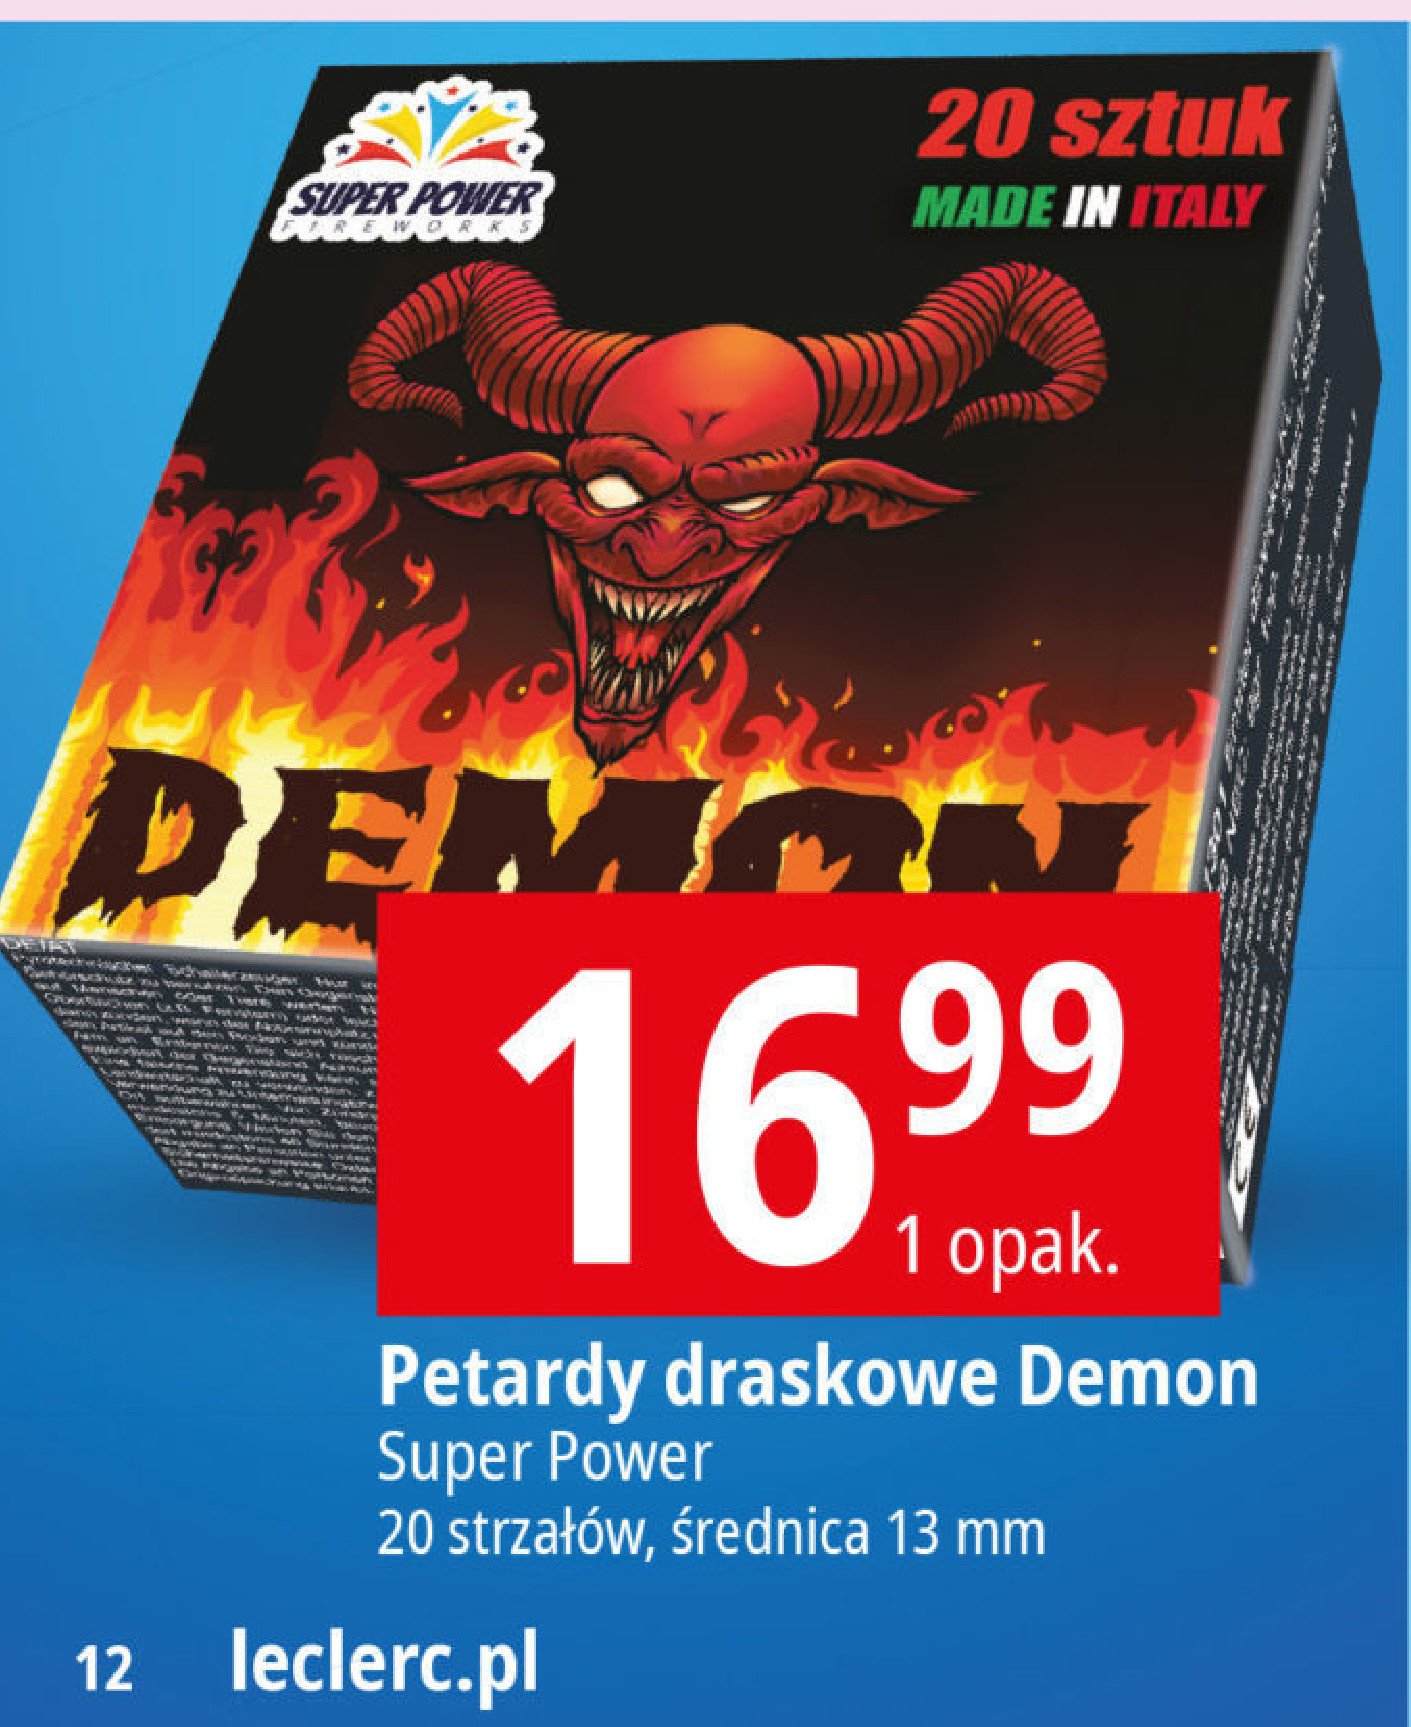 Petardy draskowe demon SUPER POWER promocja